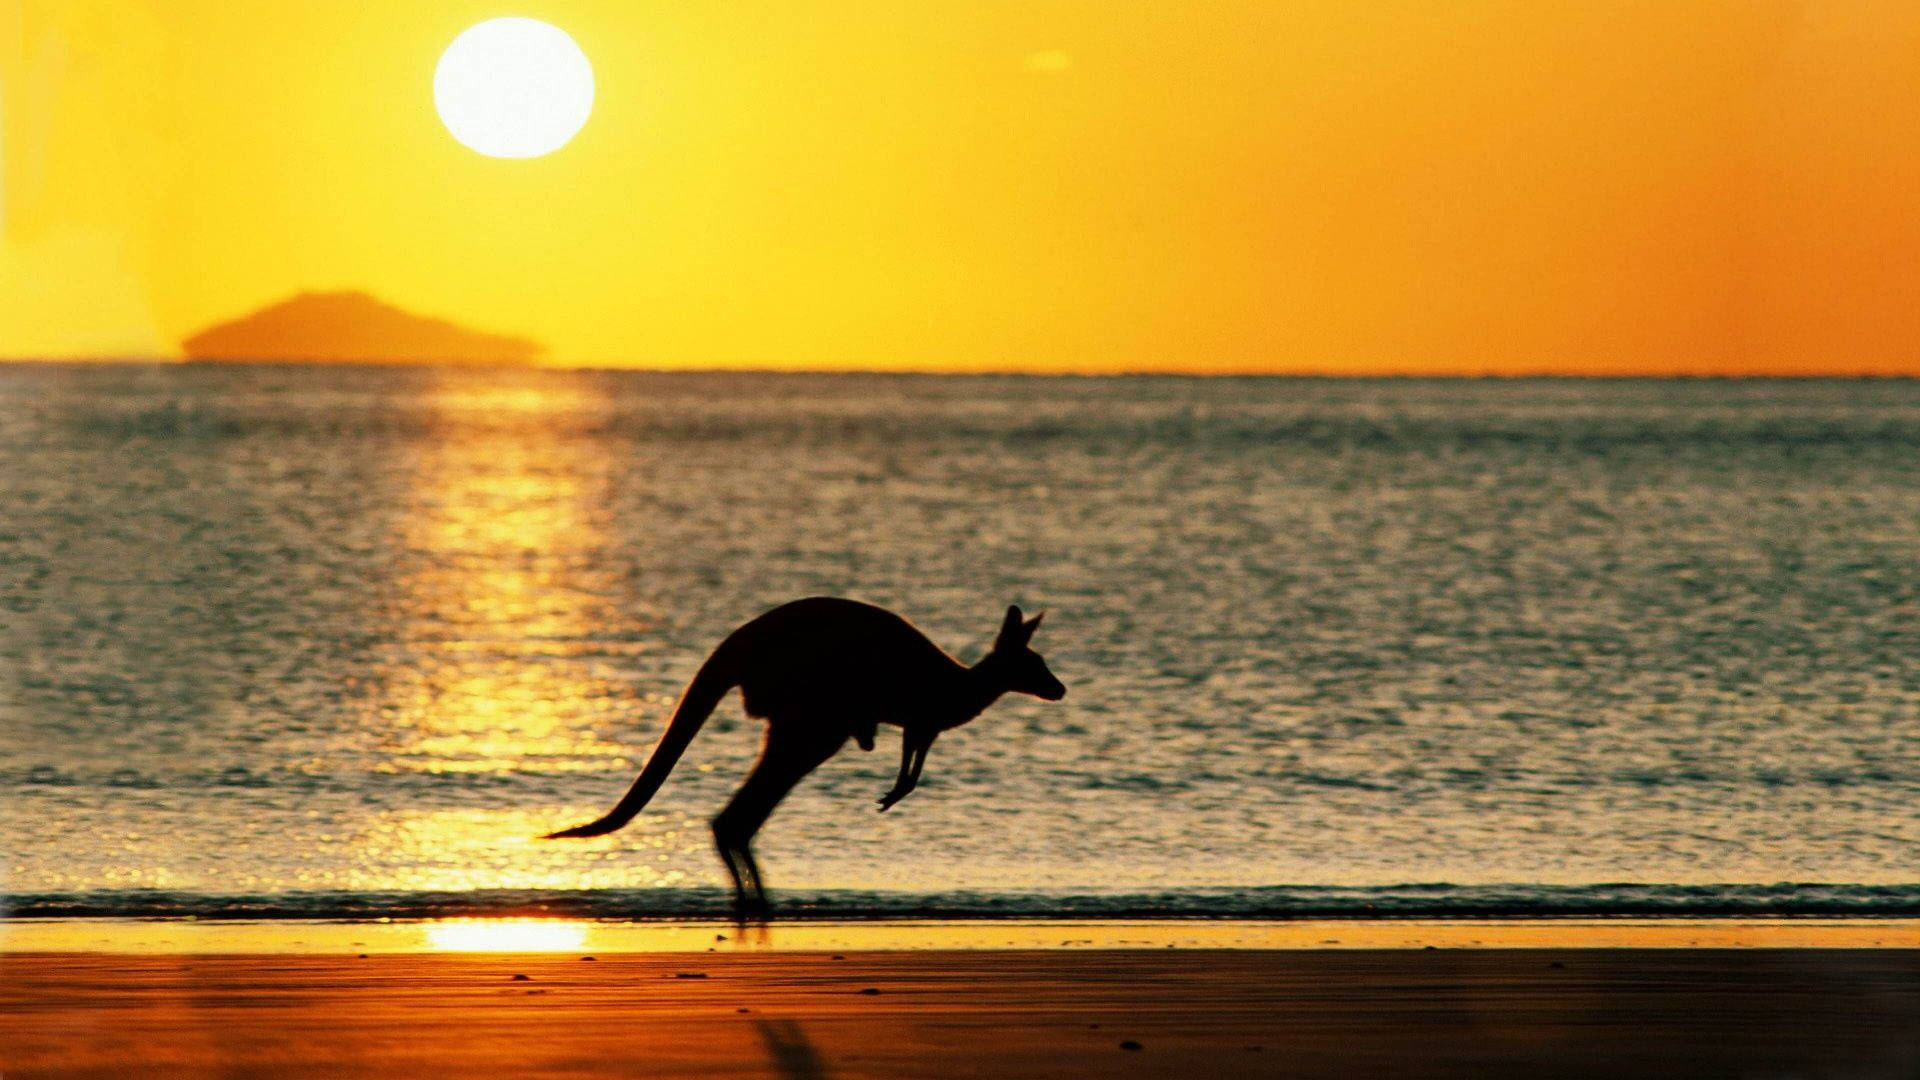 Kangaroo In Sunset Wallpaper